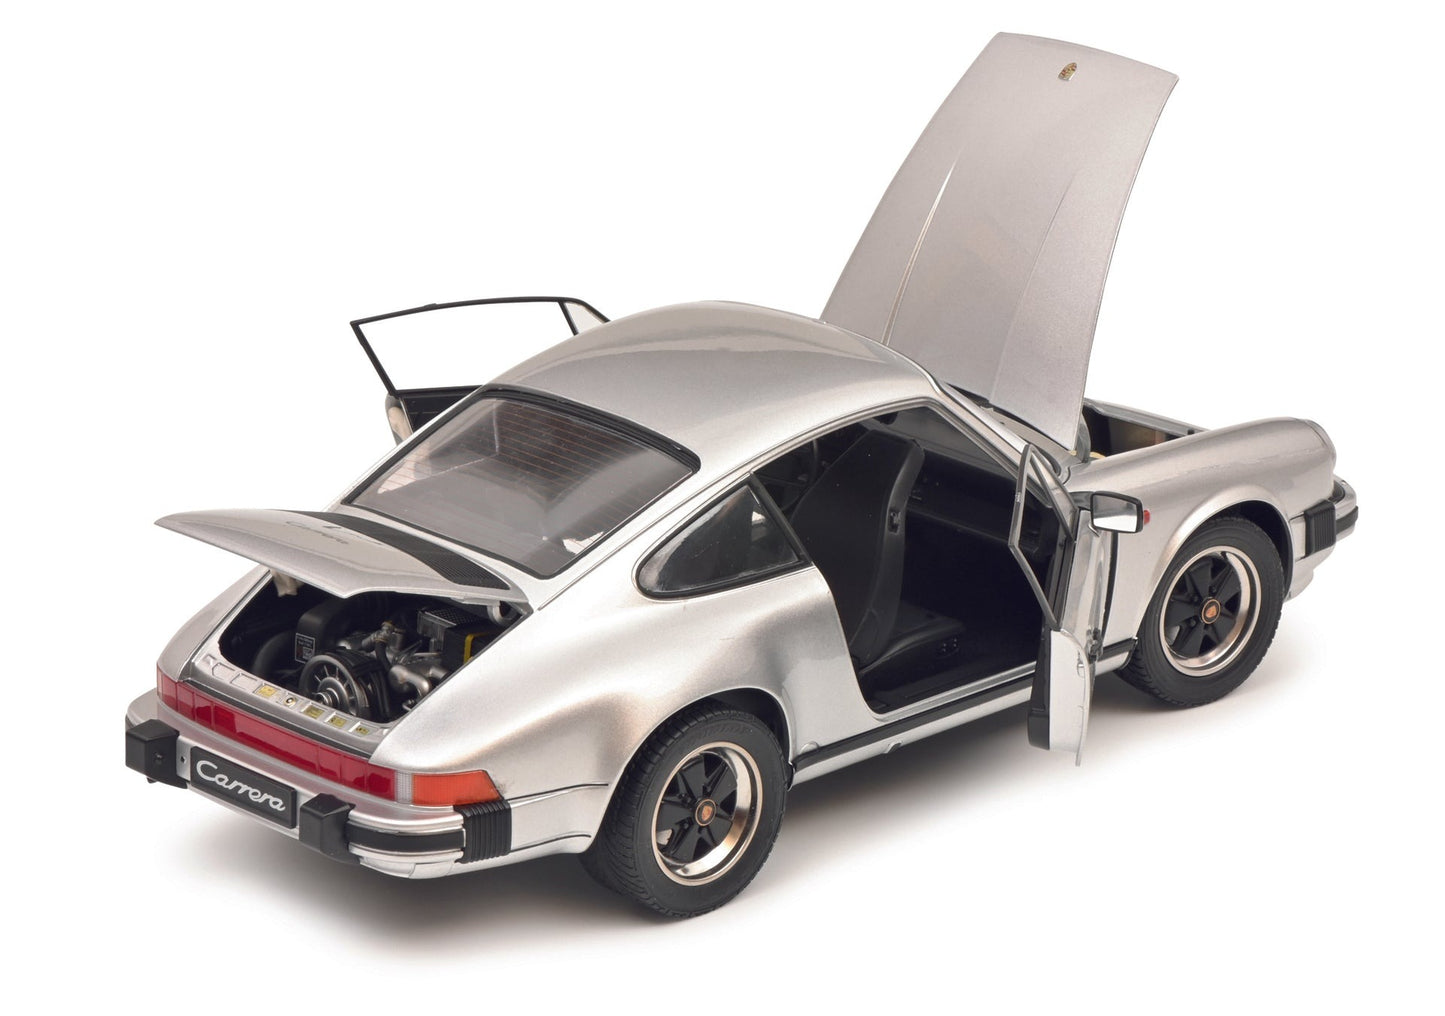 Schuco 1:12 Porsche 911 Carrera Targa 3.2 Silver 450669900